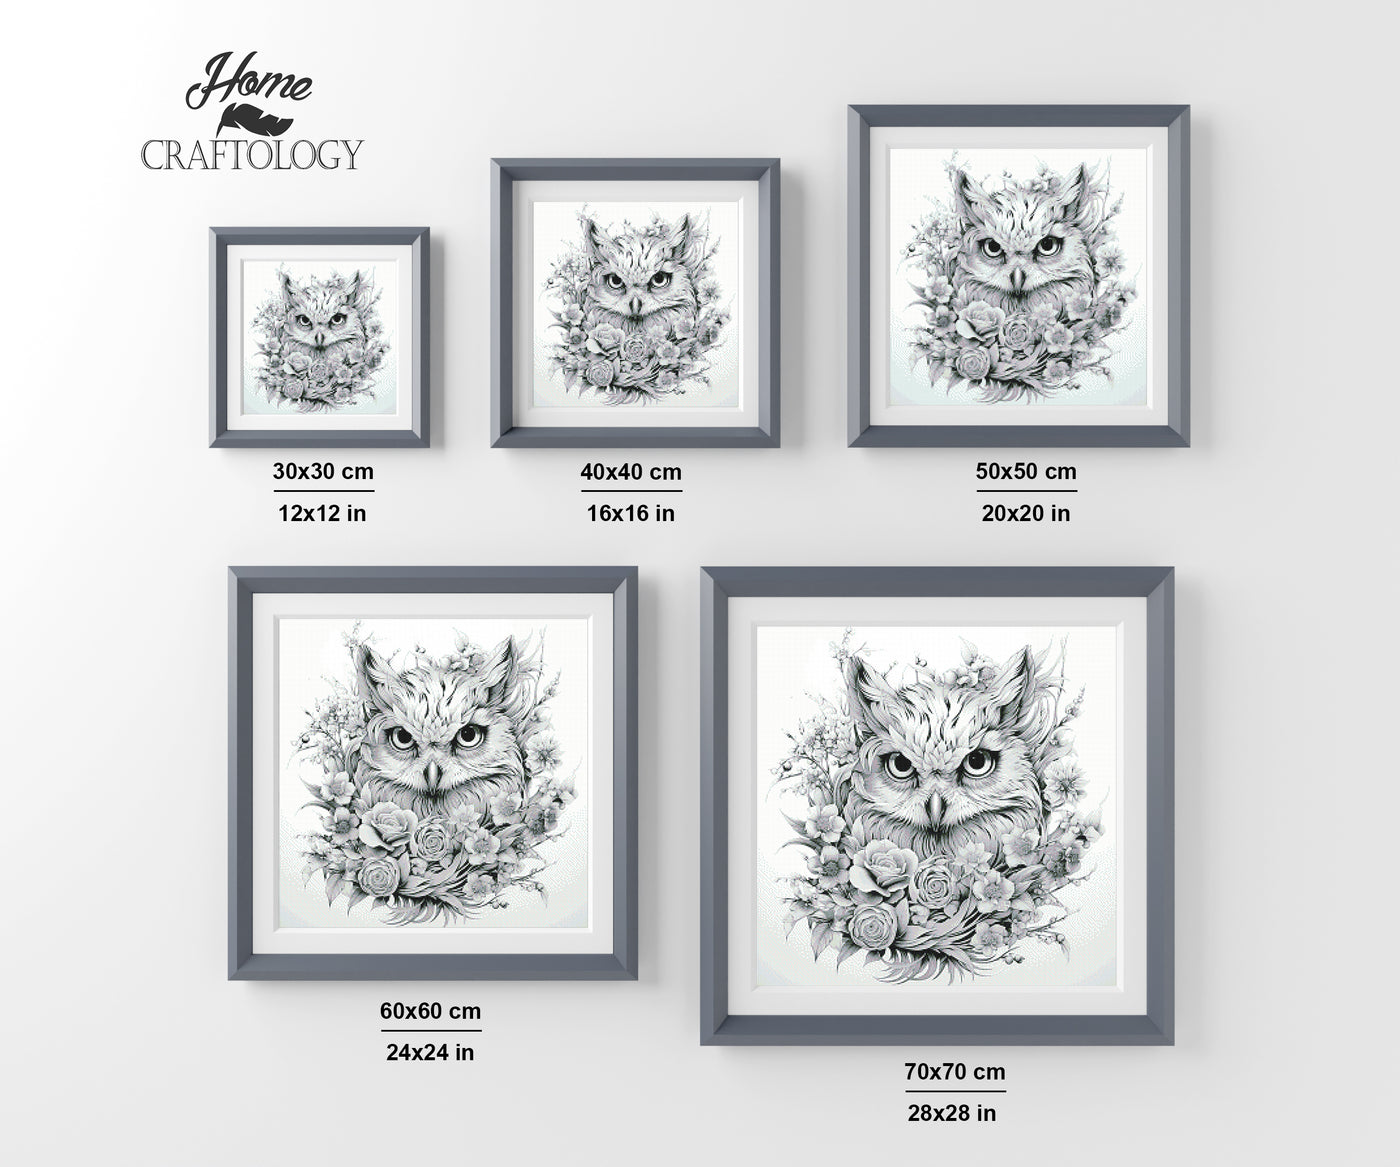 New! Owl with Flowers - Premium Diamond Painting Kit